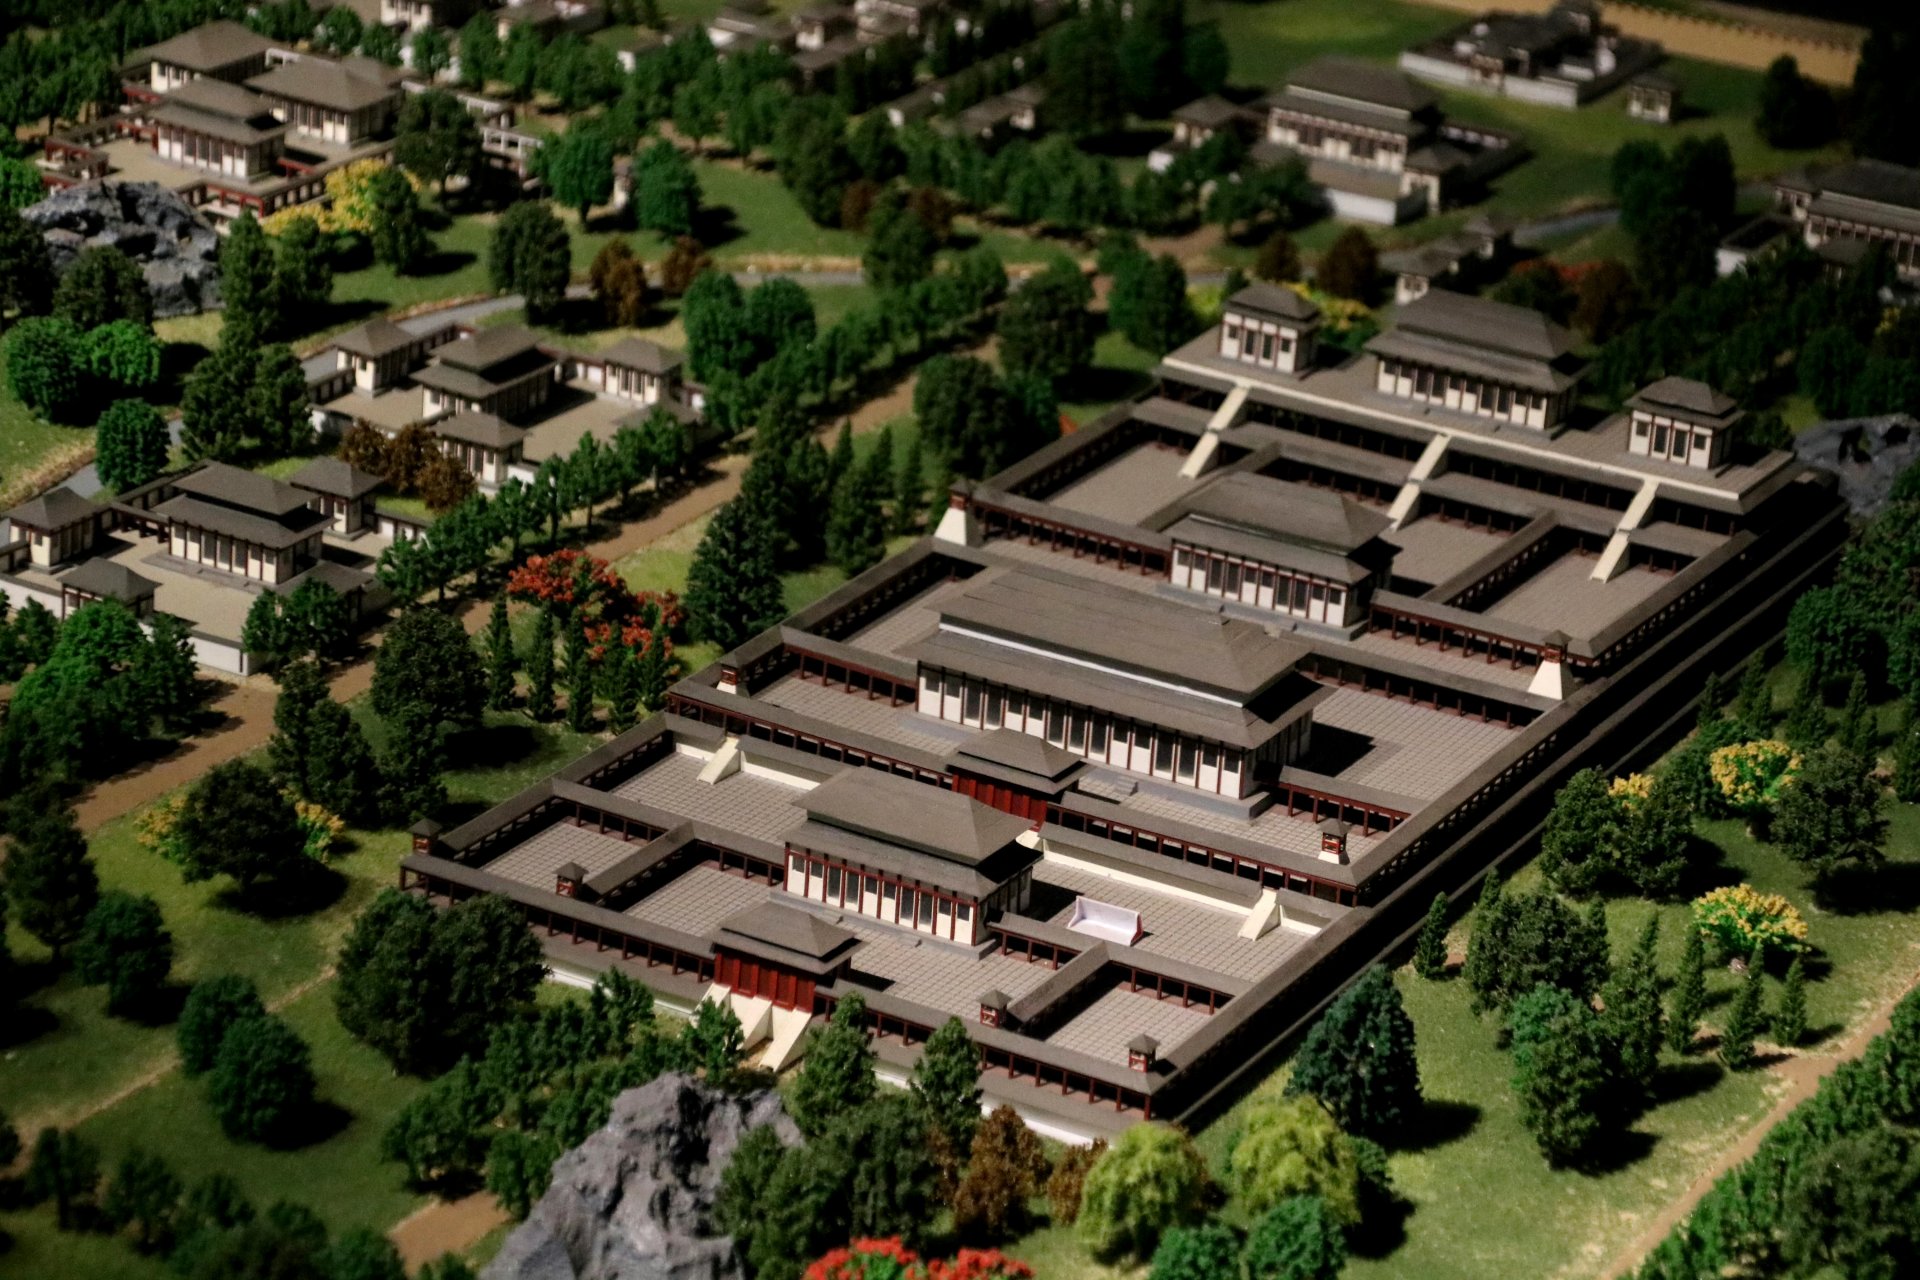 模型欣赏:西北大学博物馆藏的汉长安城未央宫前殿复原模型,汉代时期